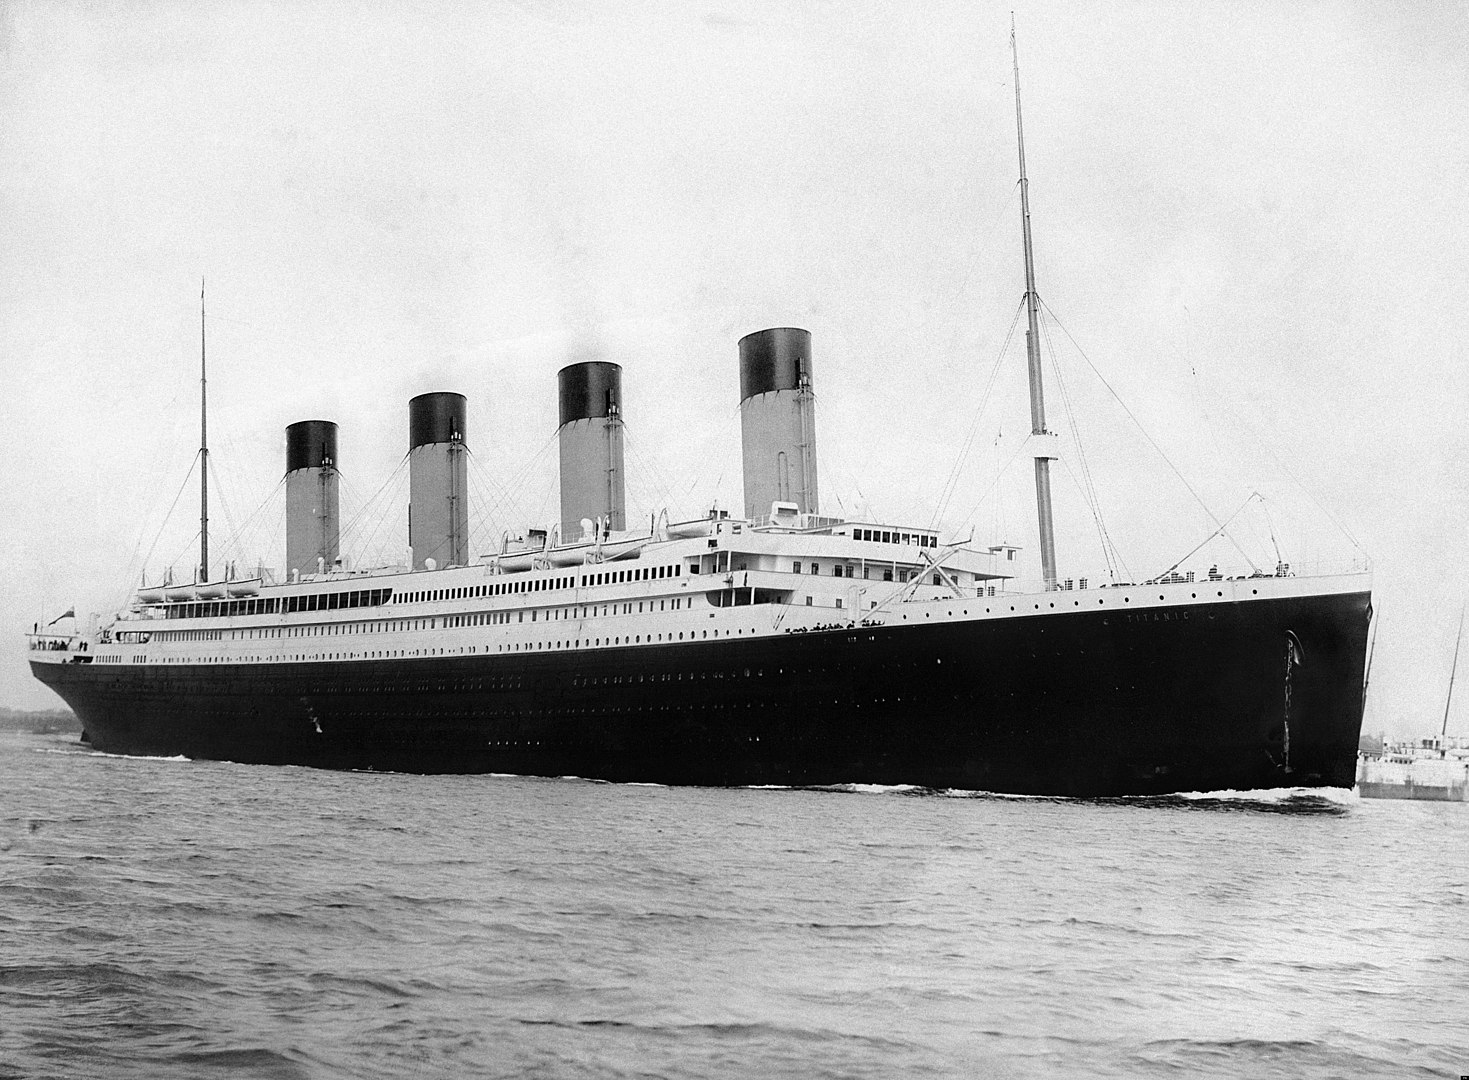 Amerika be akarja tiltani a tárgyak felhozatalát a Titanic roncsaiból